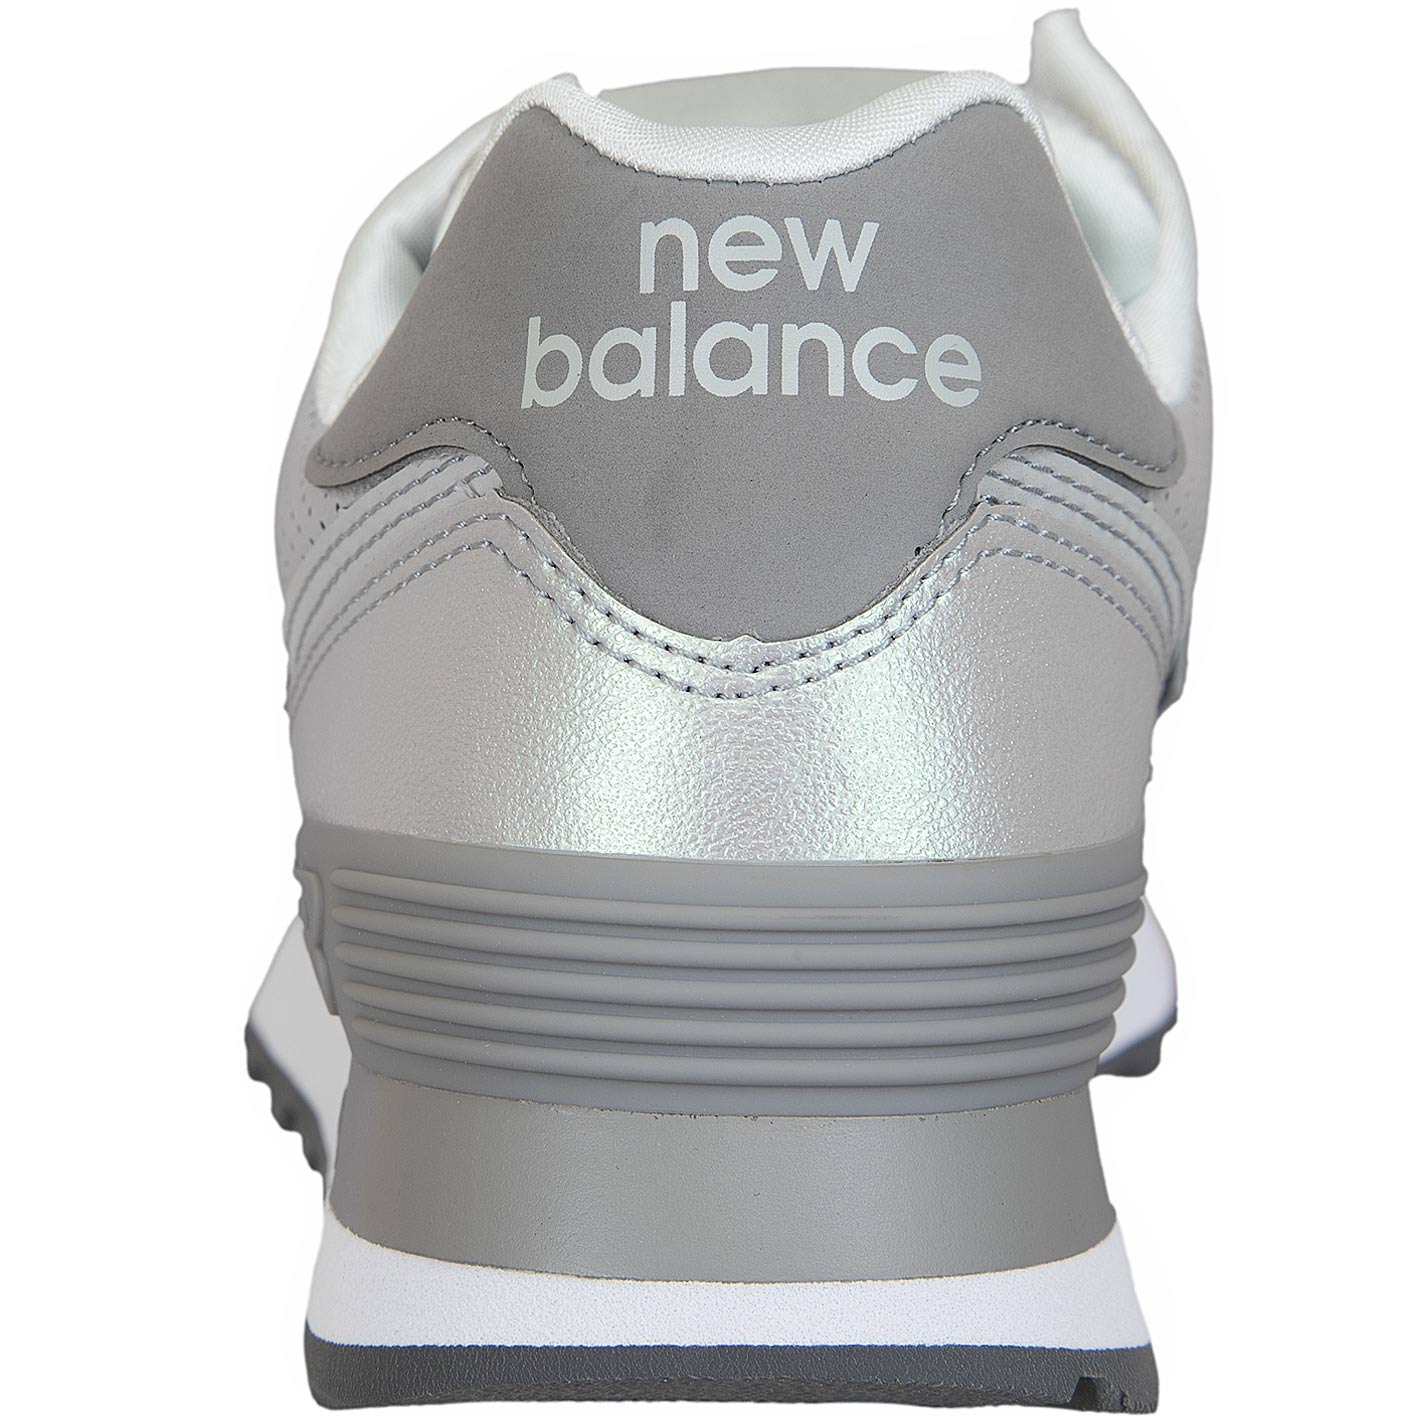 ☆ New Balance Damen Sneaker 574 Synthetik/Leder silber - hier bestellen!